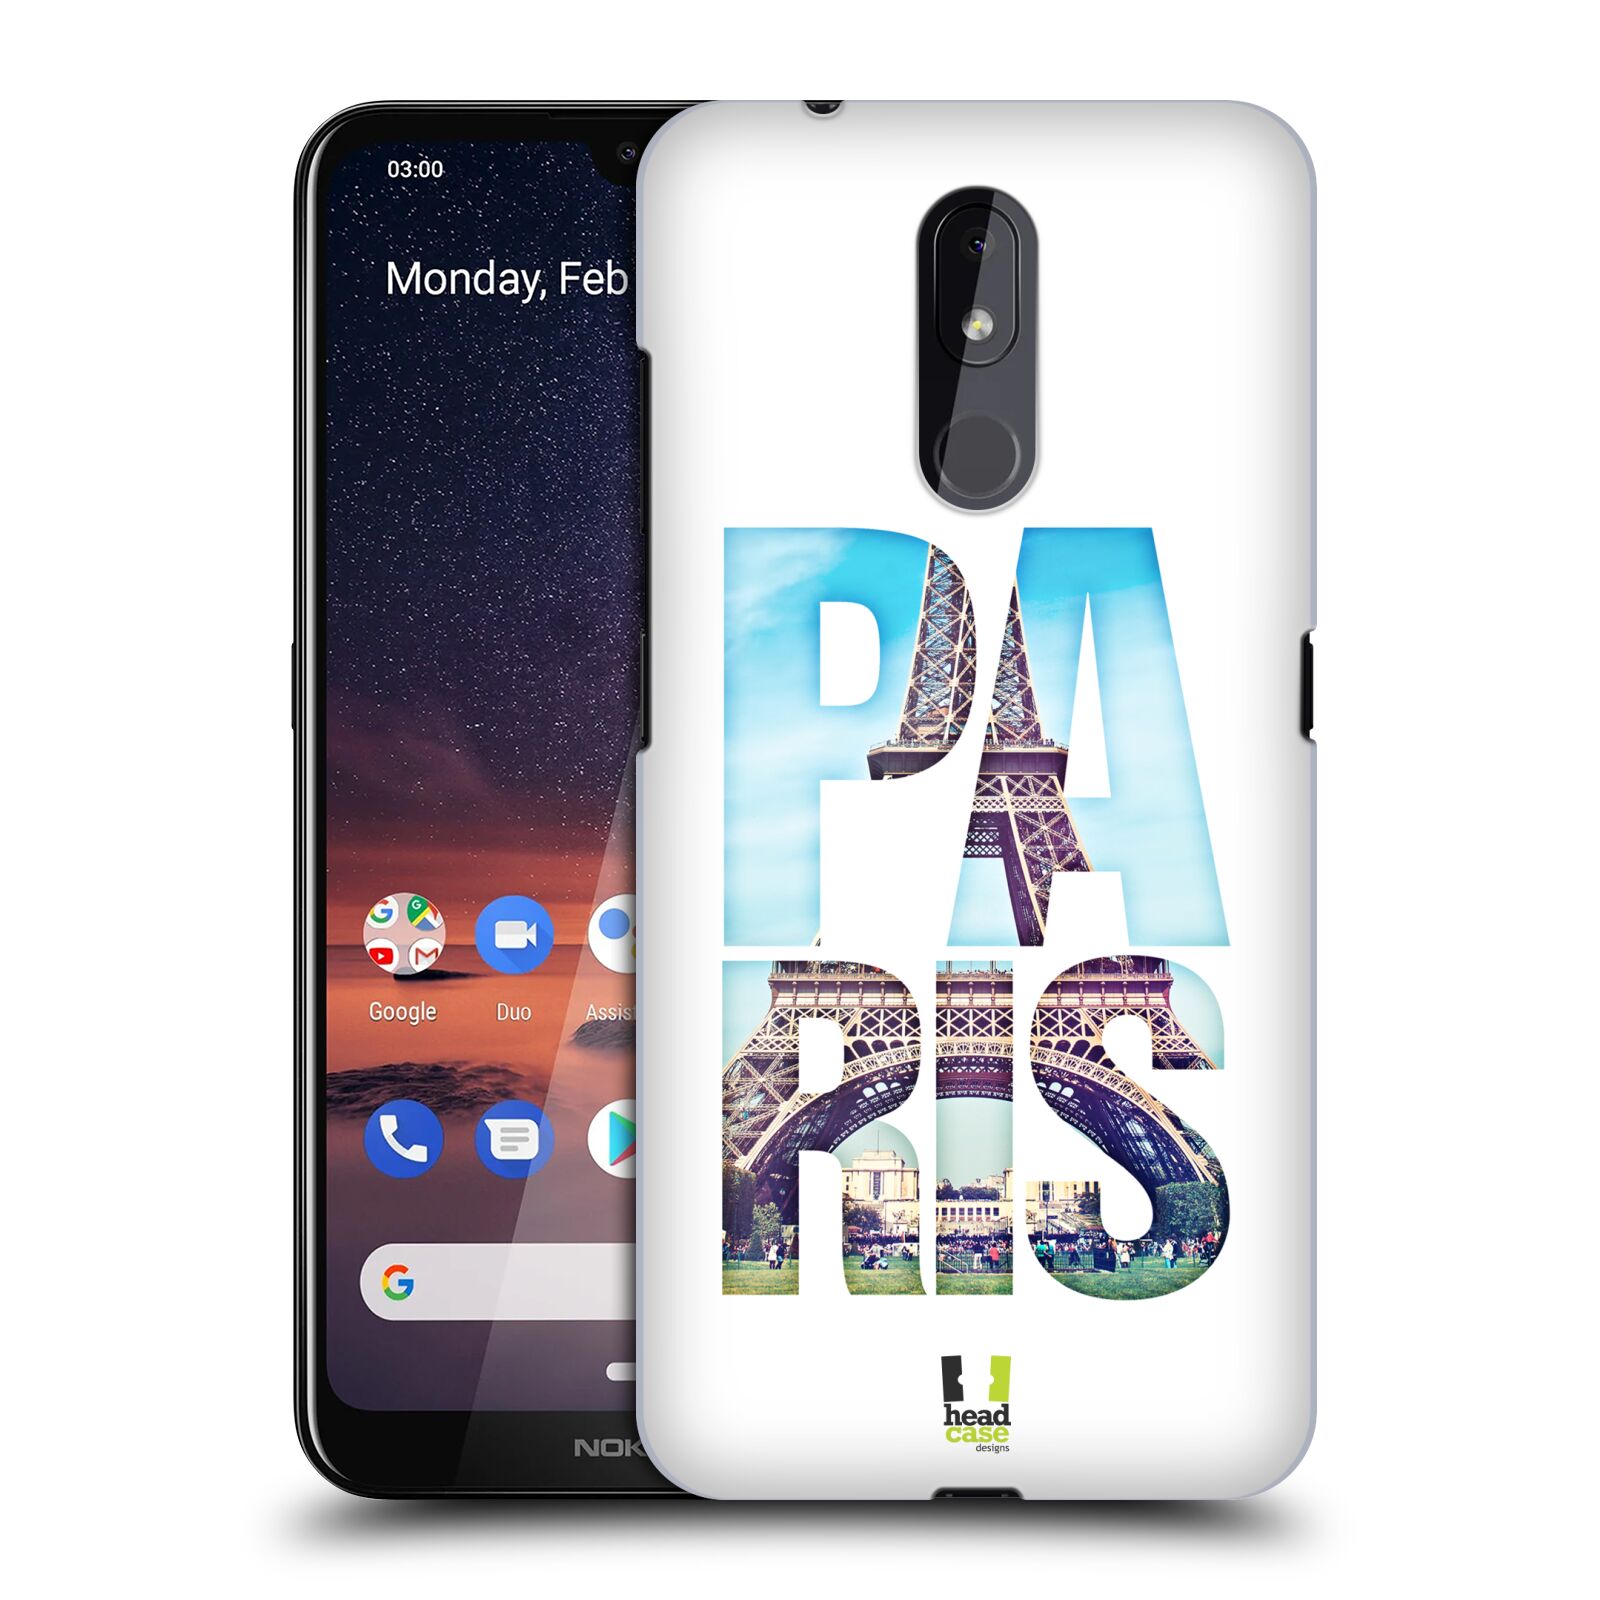 Pouzdro na mobil Nokia 3.2 - HEAD CASE - vzor Města foto a nadpis FRANCIE, PAŘÍŽ, EIFFELOVA VĚŽ